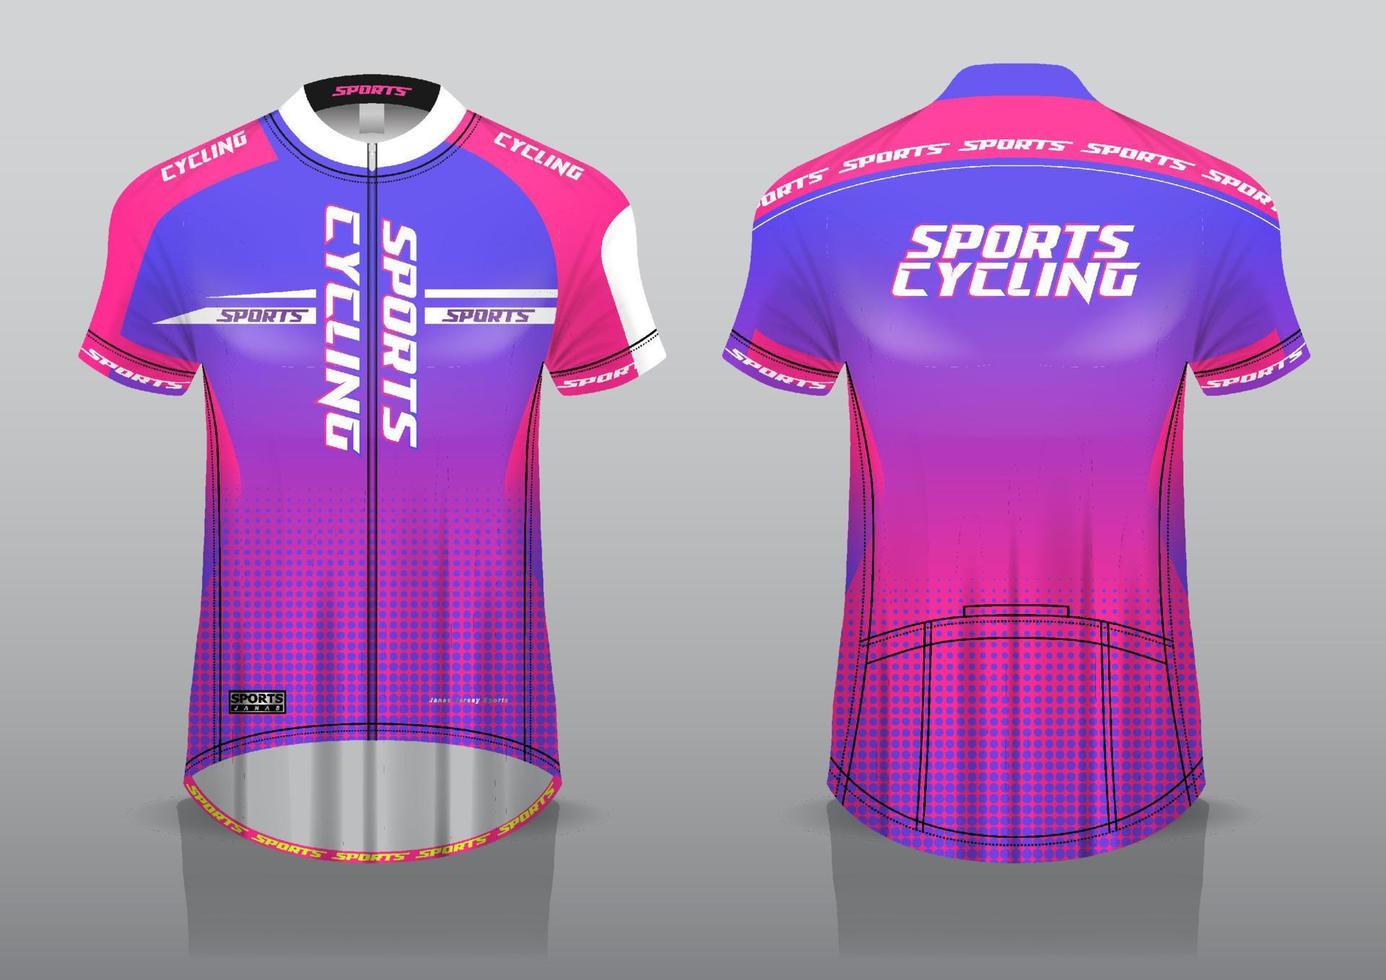 Jersey-Design für den Radsport, Vorder- und Rückansicht und einfach zu bearbeiten und auf Stoff zu drucken, Sportbekleidung für Radsportteams vektor